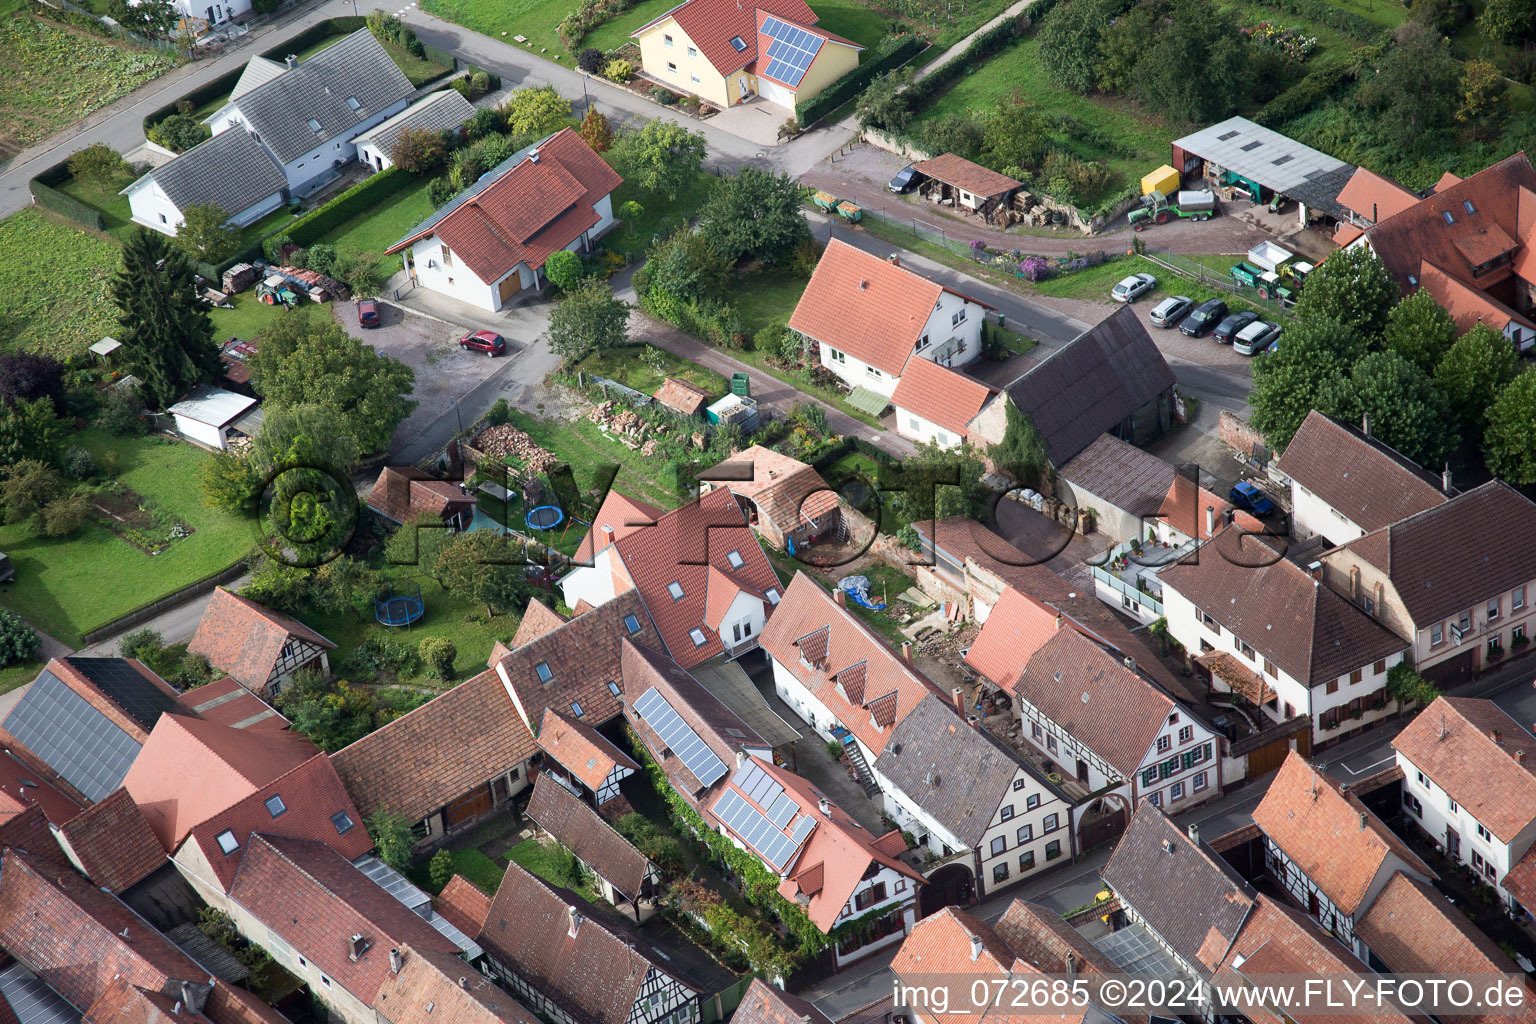 Village view in the district Heuchelheim in Heuchelheim-Klingen in the state Rhineland-Palatinate from above